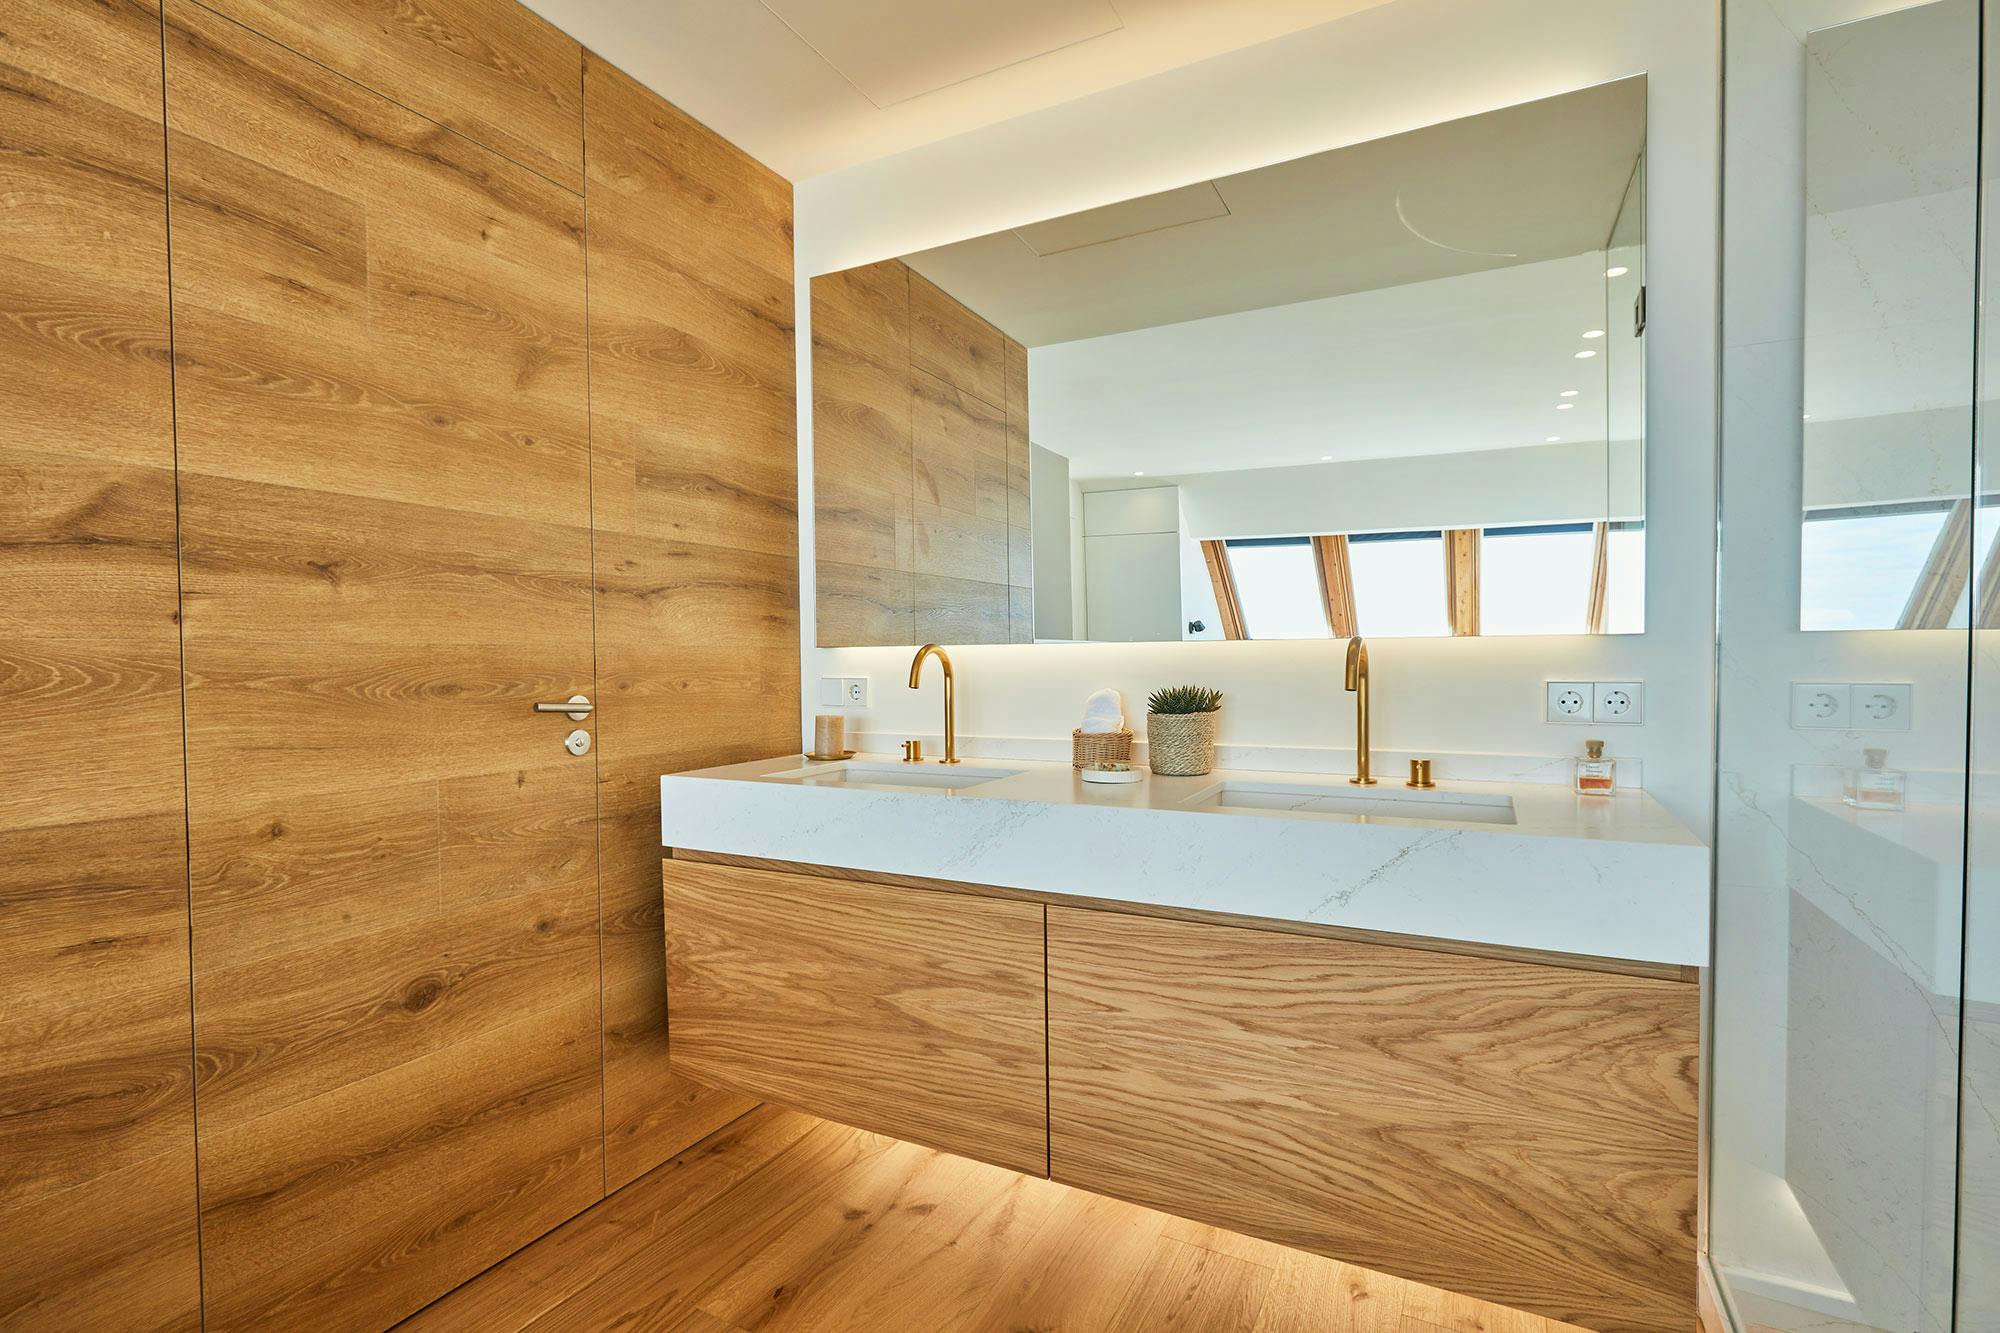 Bildnummer 37 des aktuellen Abschnitts von A striking loft in Barcelona chooses DKTN to create the perfect seamless and underfloor heating von Cosentino Deutschland